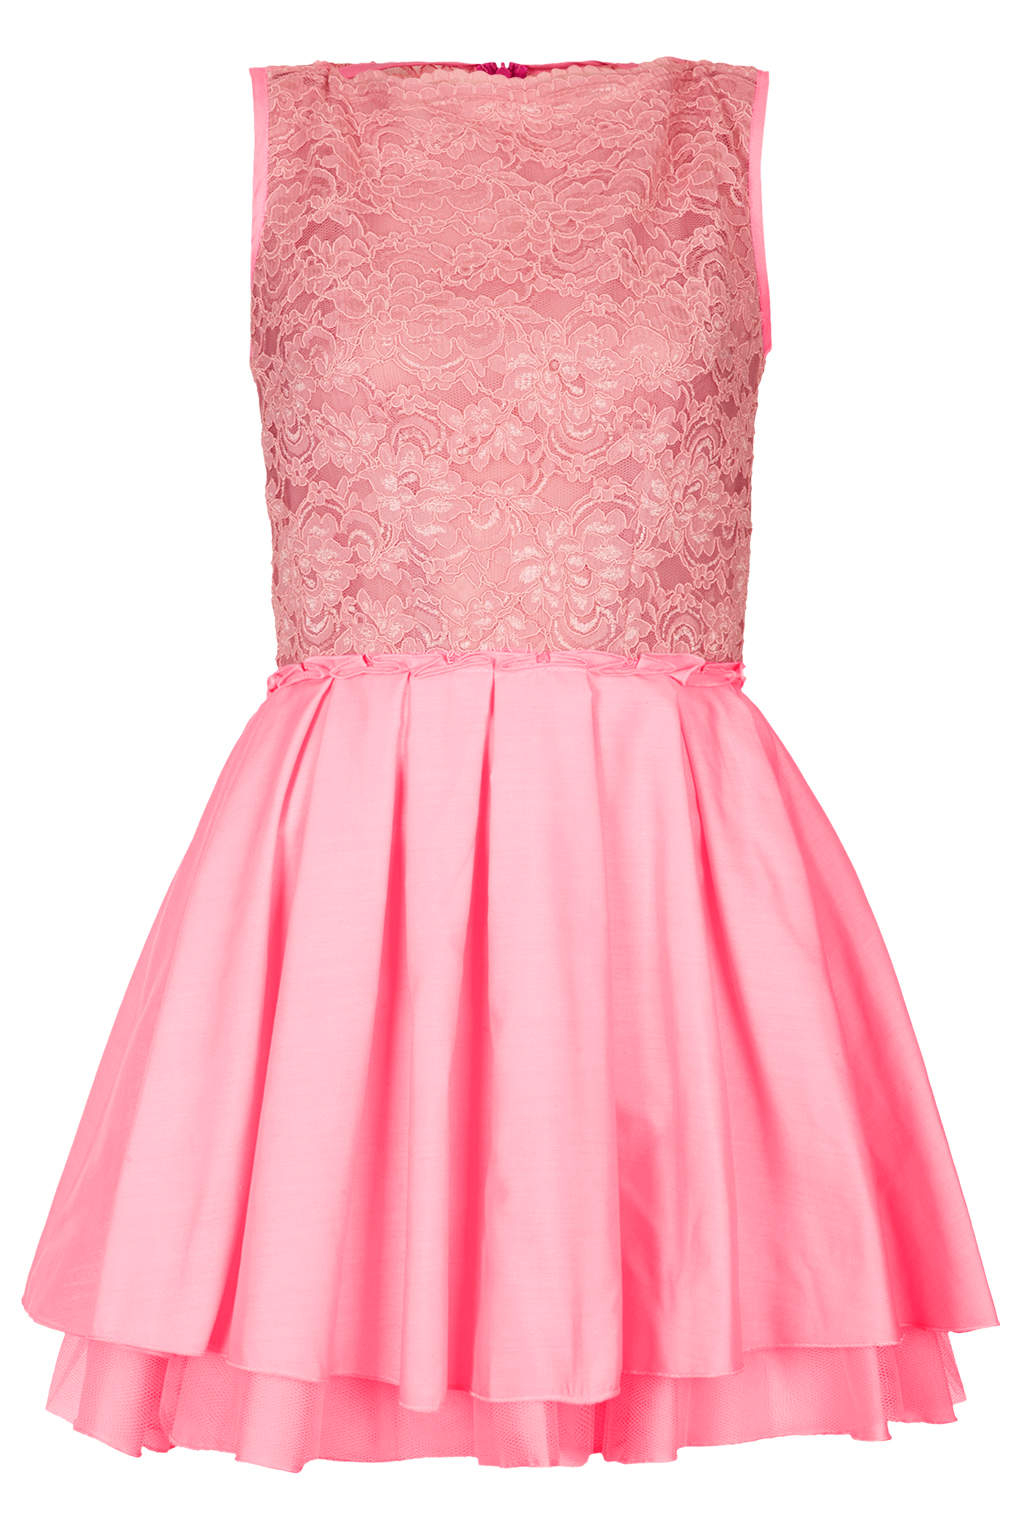 Lyst - Topshop Audrey Dress By Jones and Jones in Pink